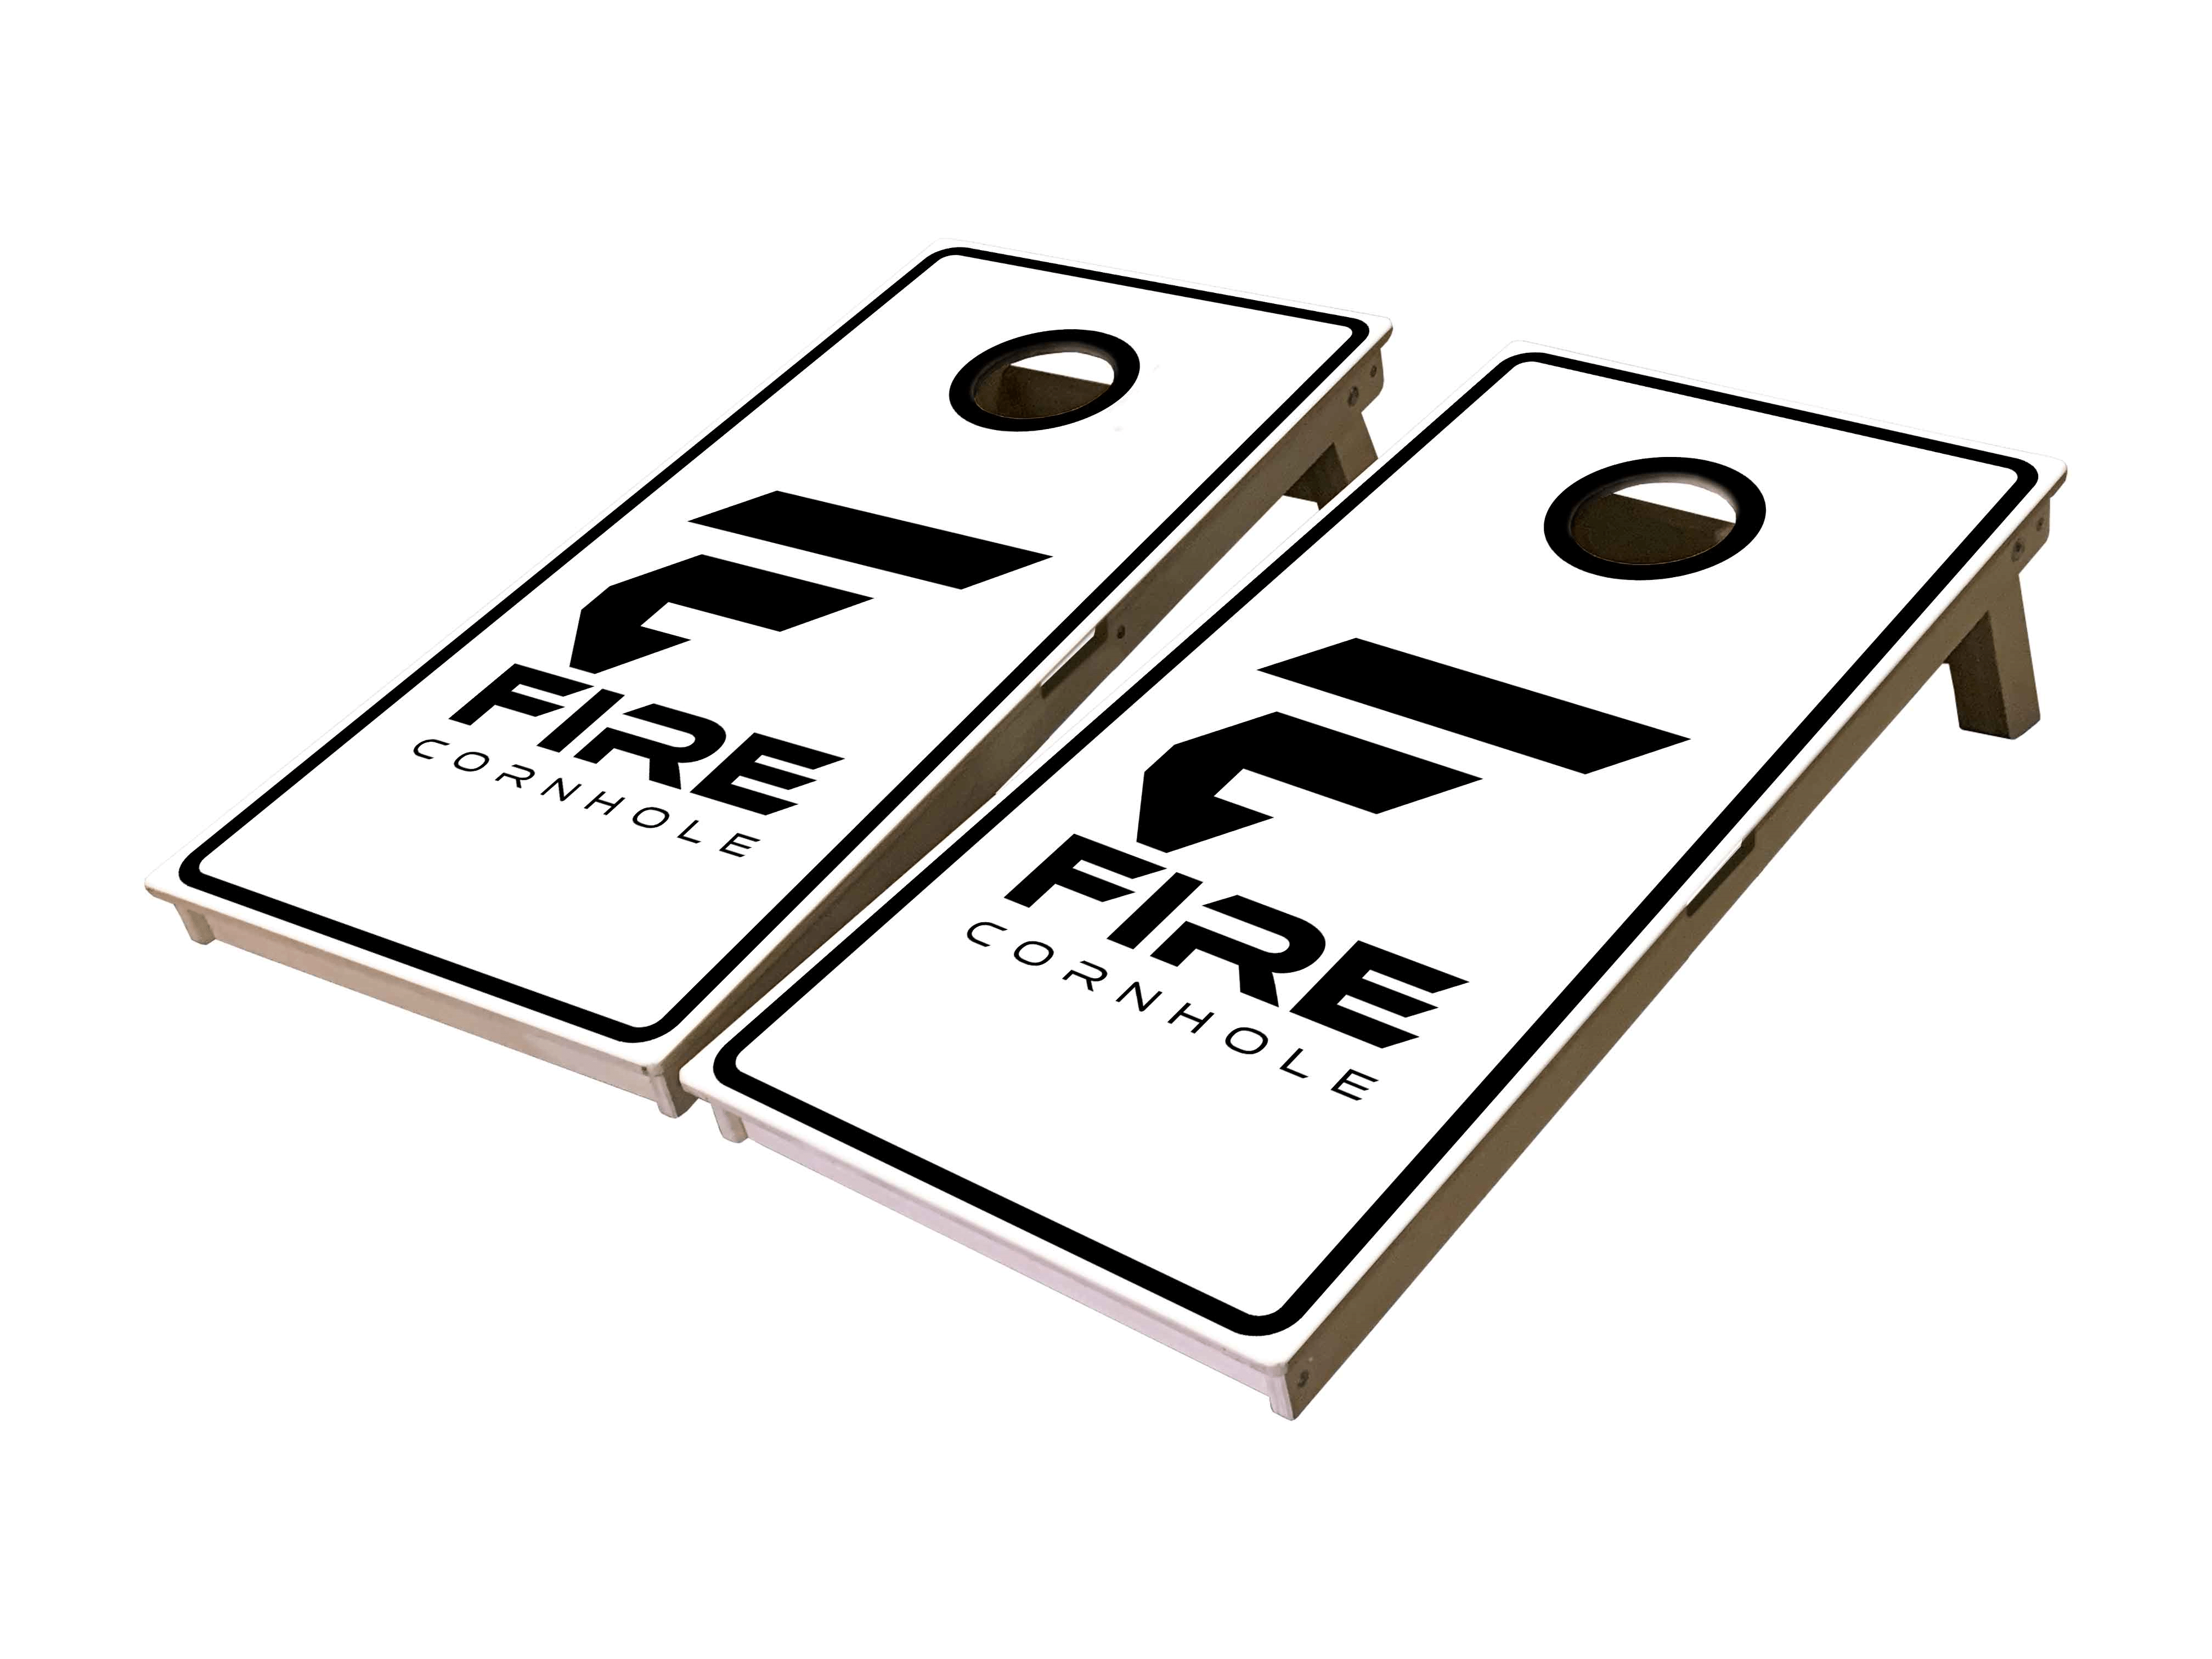 Fire Cornhole Mini Cornhole Boards in white and black